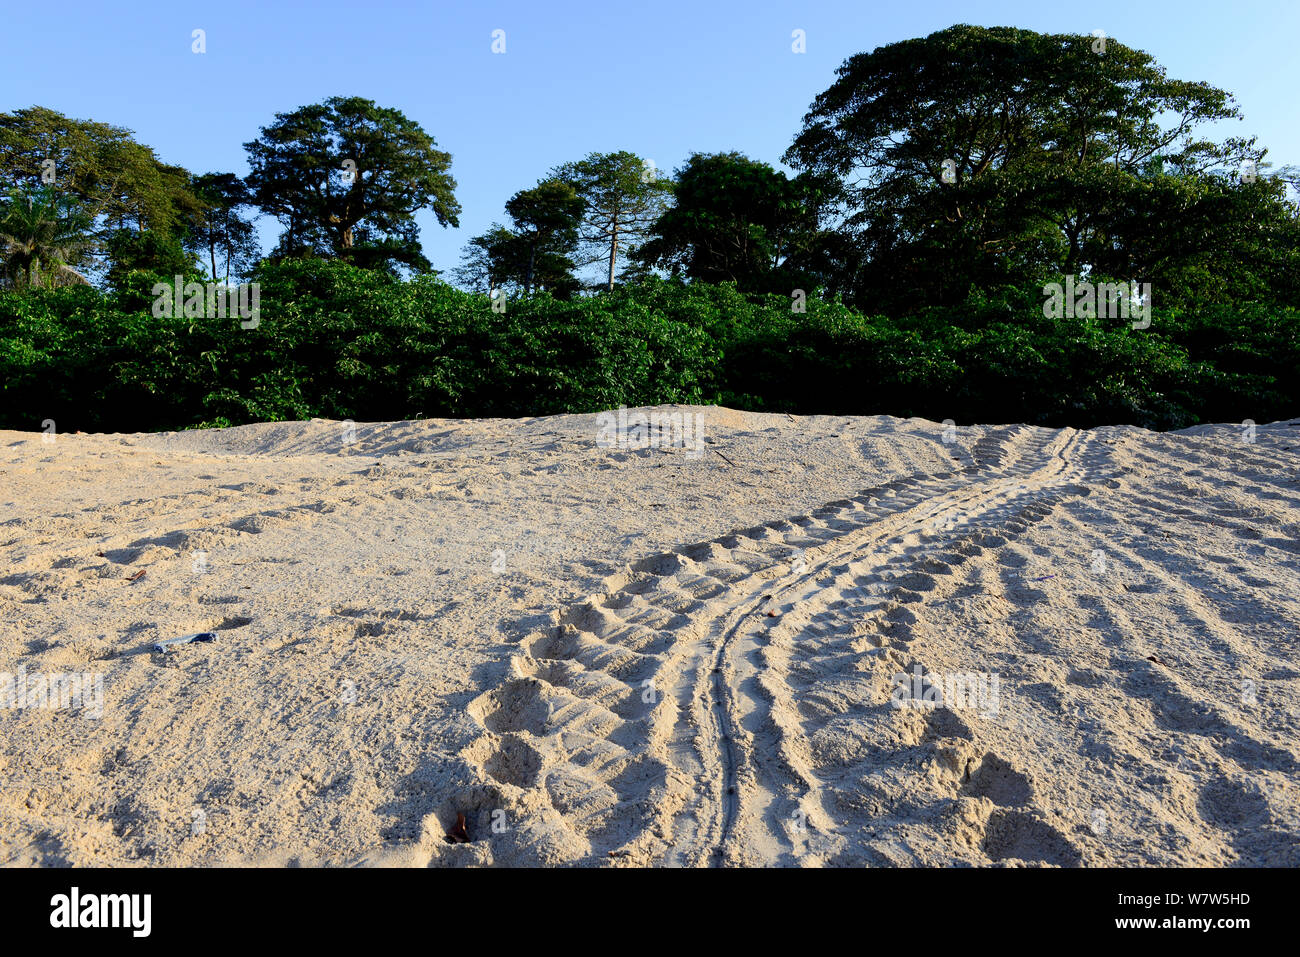 Titel der Suppenschildkröte (Chelonia mydas) auf Sand Strand, Guinea Bissau. Stockfoto